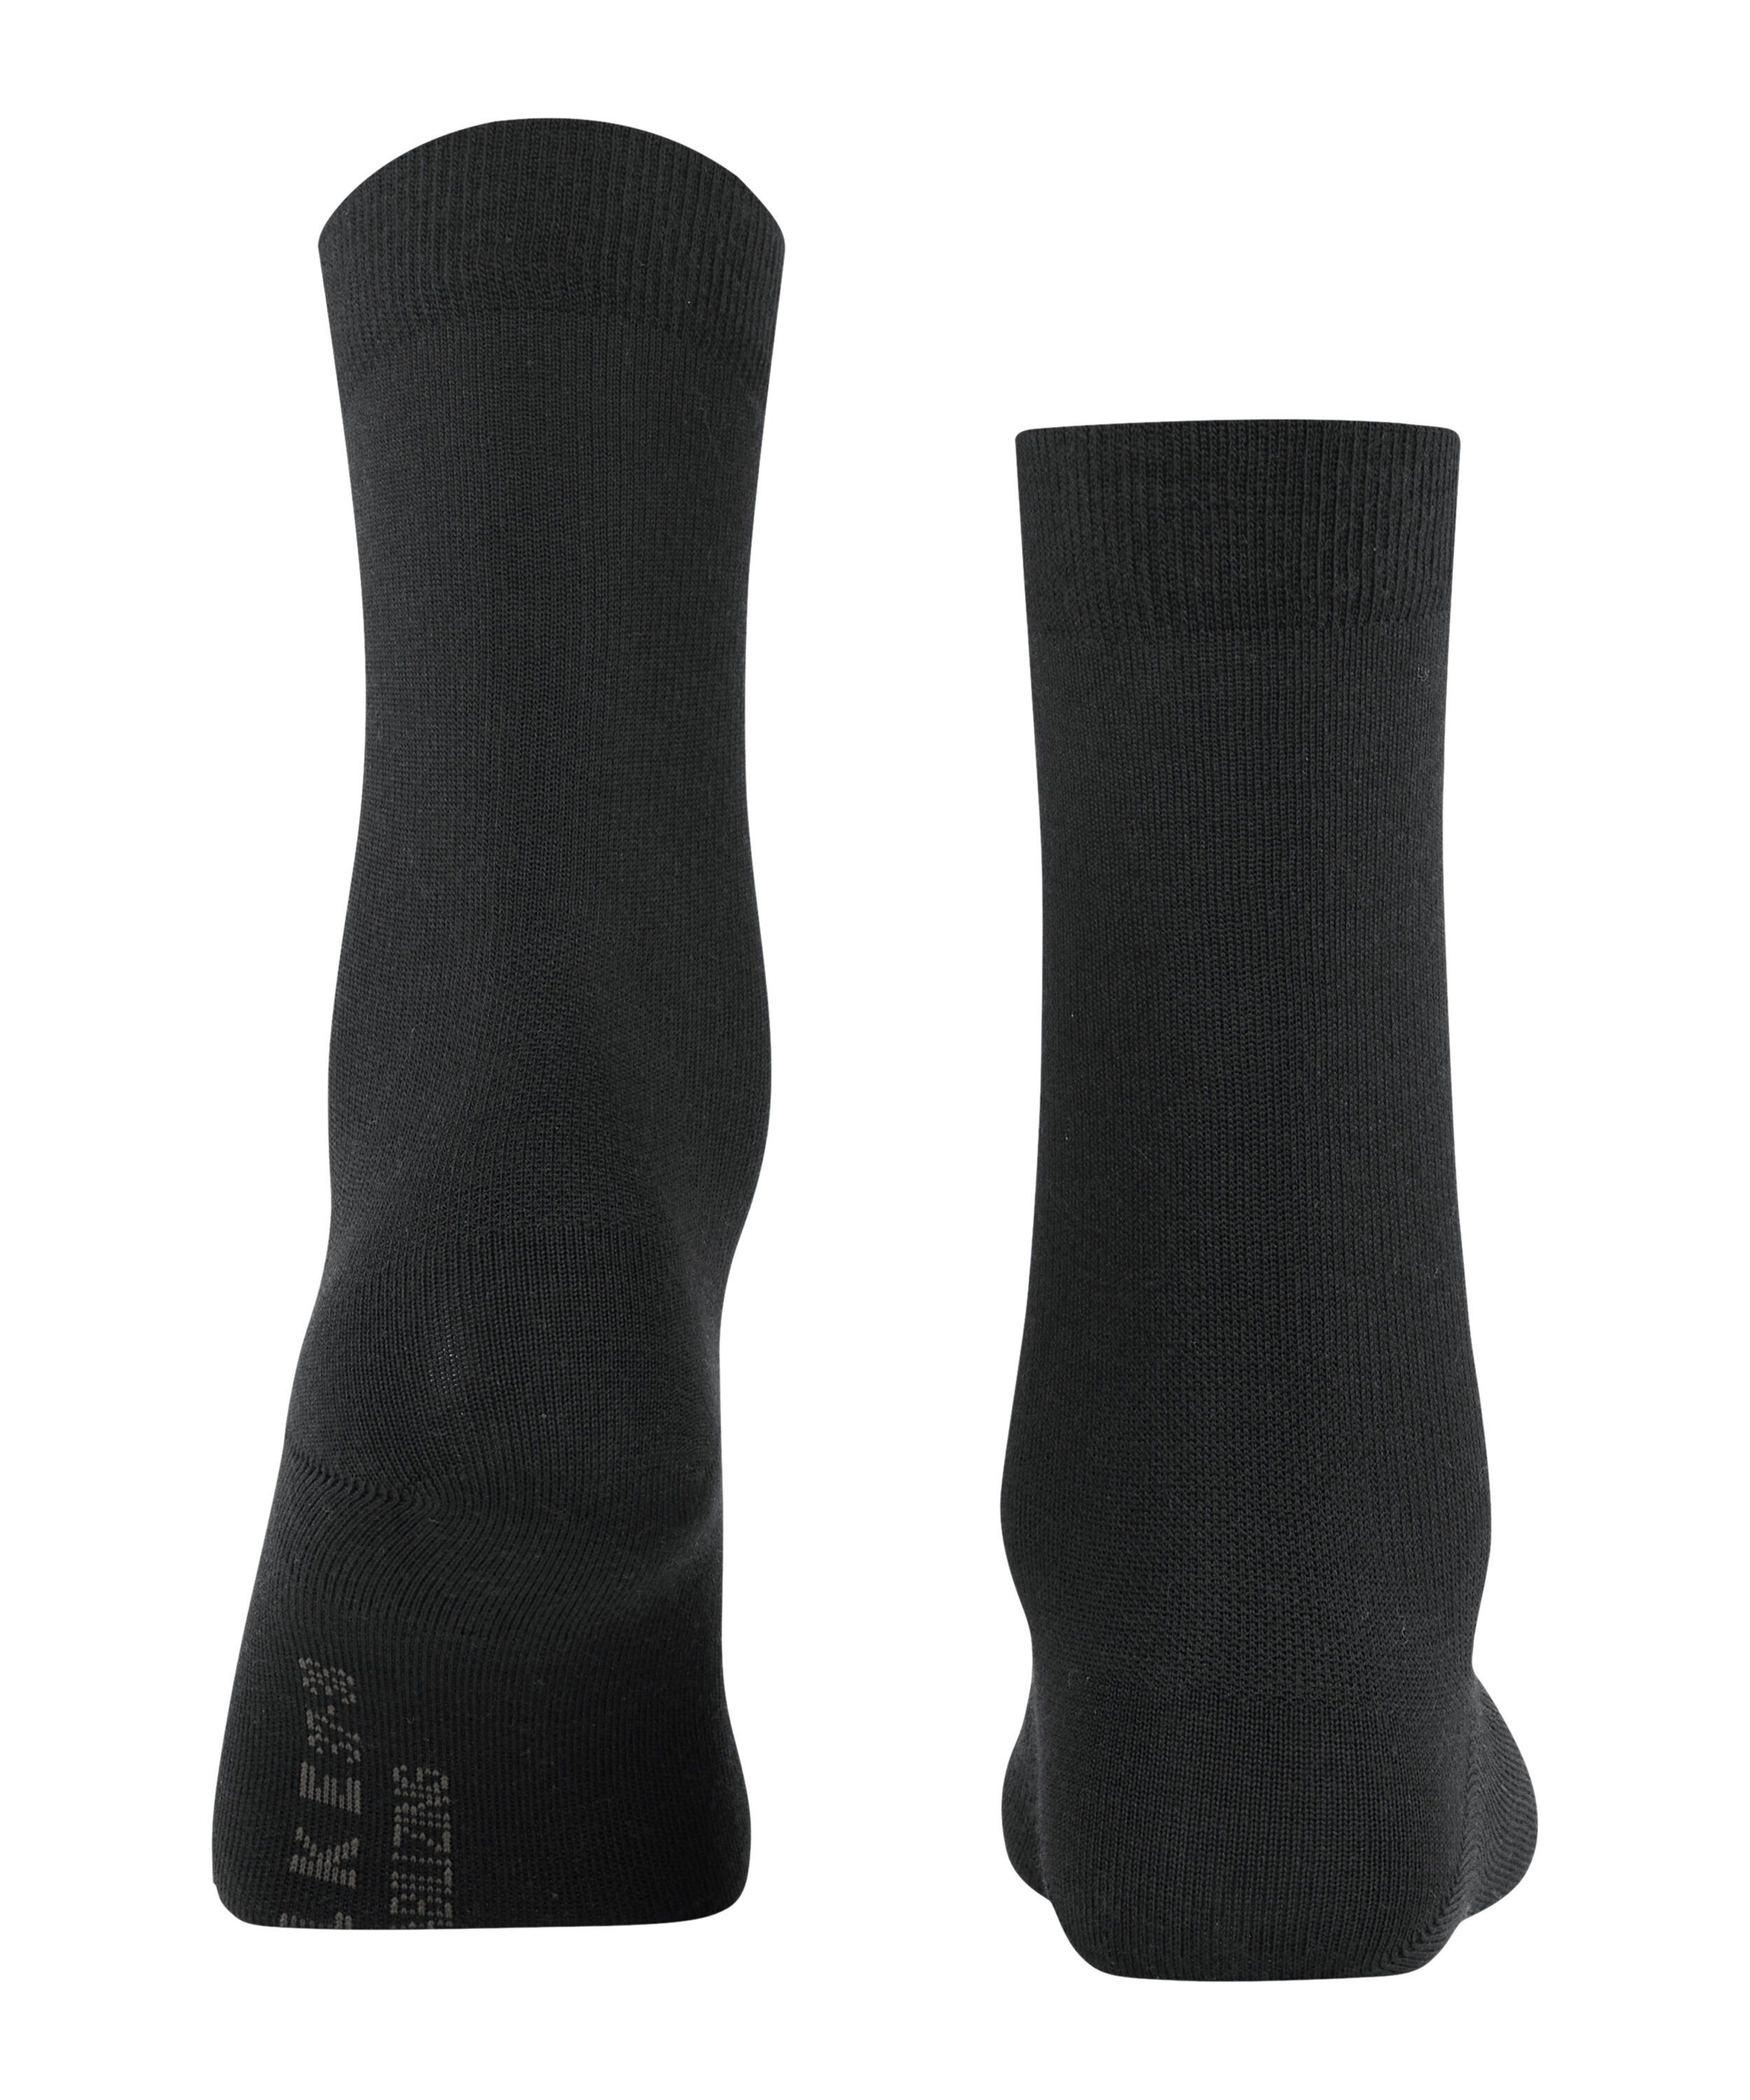 Everyday (3000) Stabilizing (1-Paar) FALKE Wool black Socken